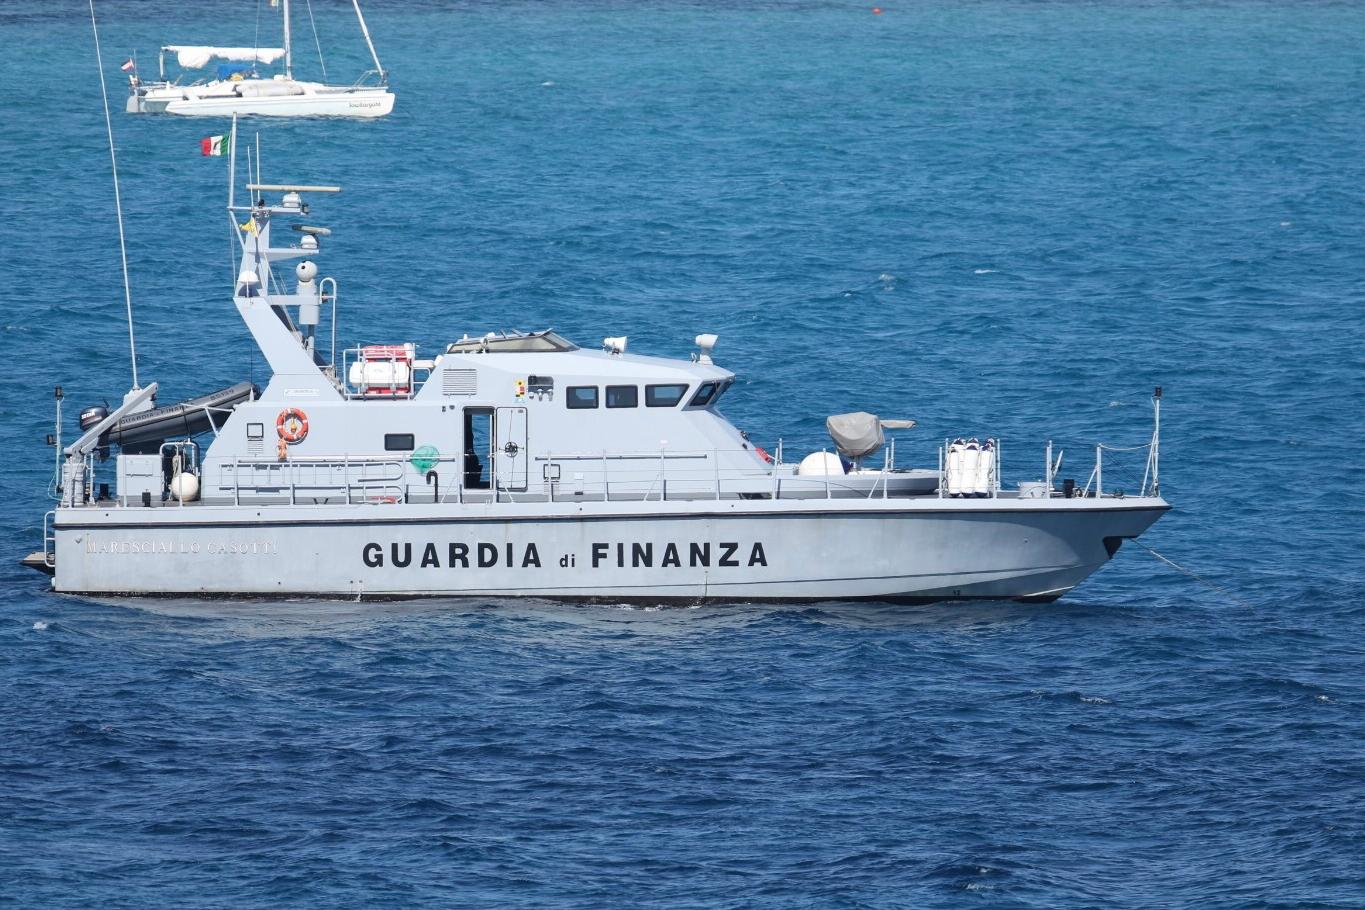 La Motovedetta della Guardia di Finanza durante le operazioni di pattugliamento delle coste (foto L'Unione Sarda - Murru)